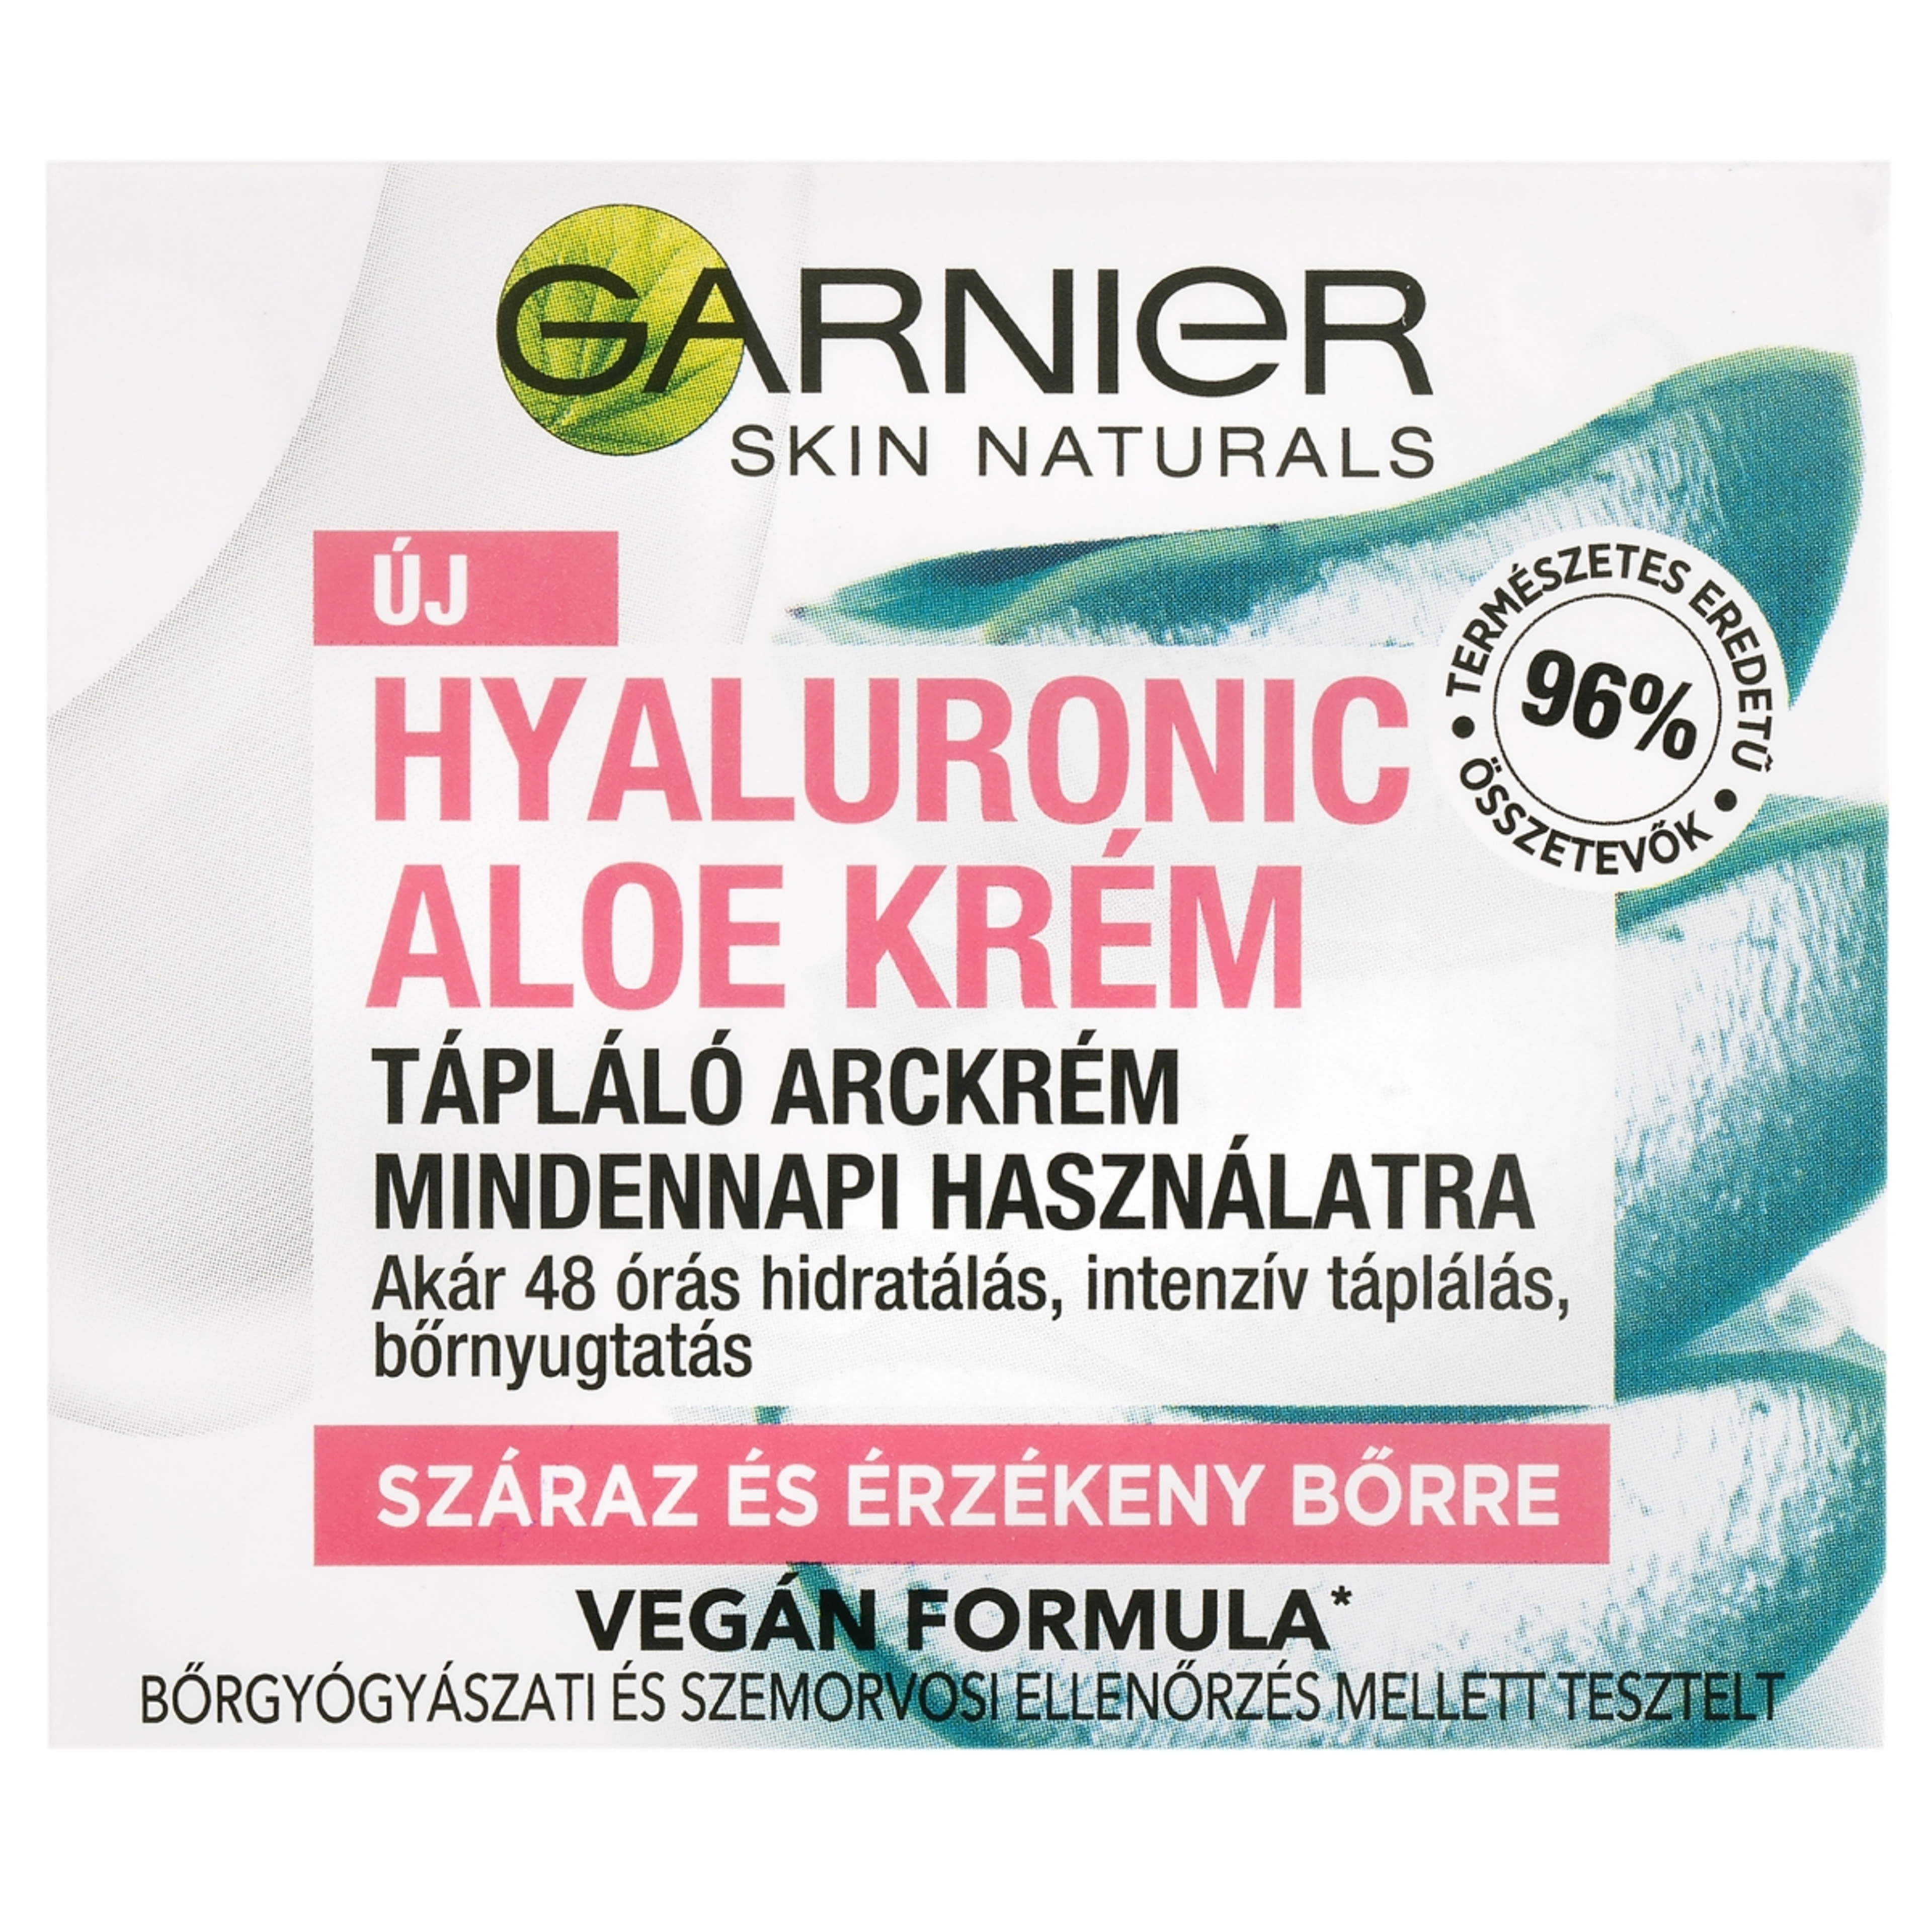 Garnier Skin Naturals Hyaluronic Aloe krém 50 ml száraz és érzékeny bőrre - 1 db-2